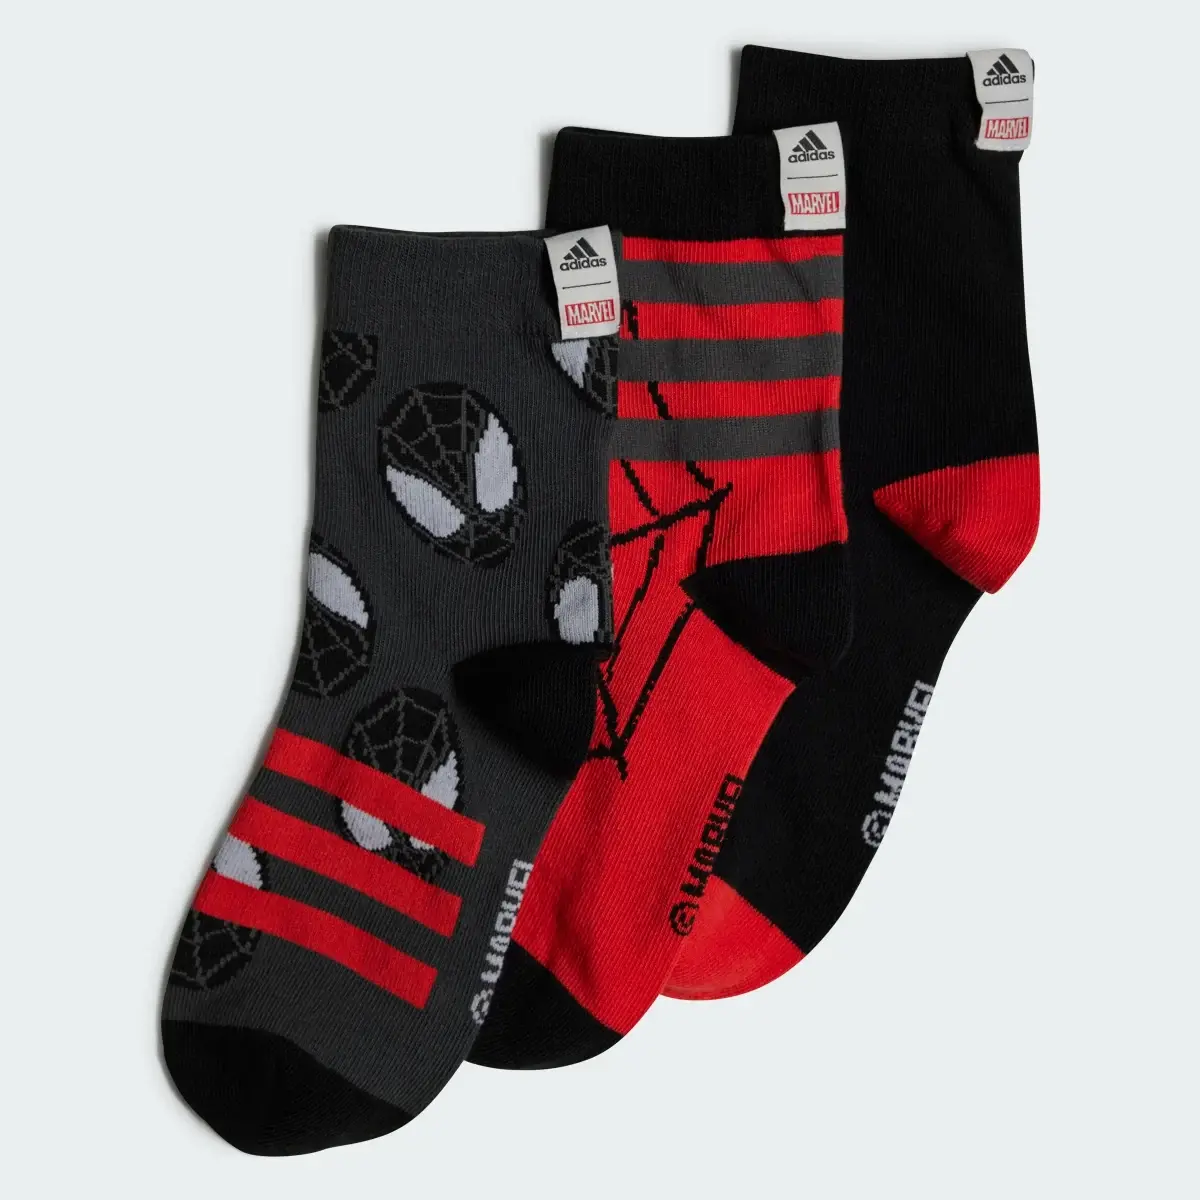 Adidas Meias Marvel Spider-Man — 3 pares. 2